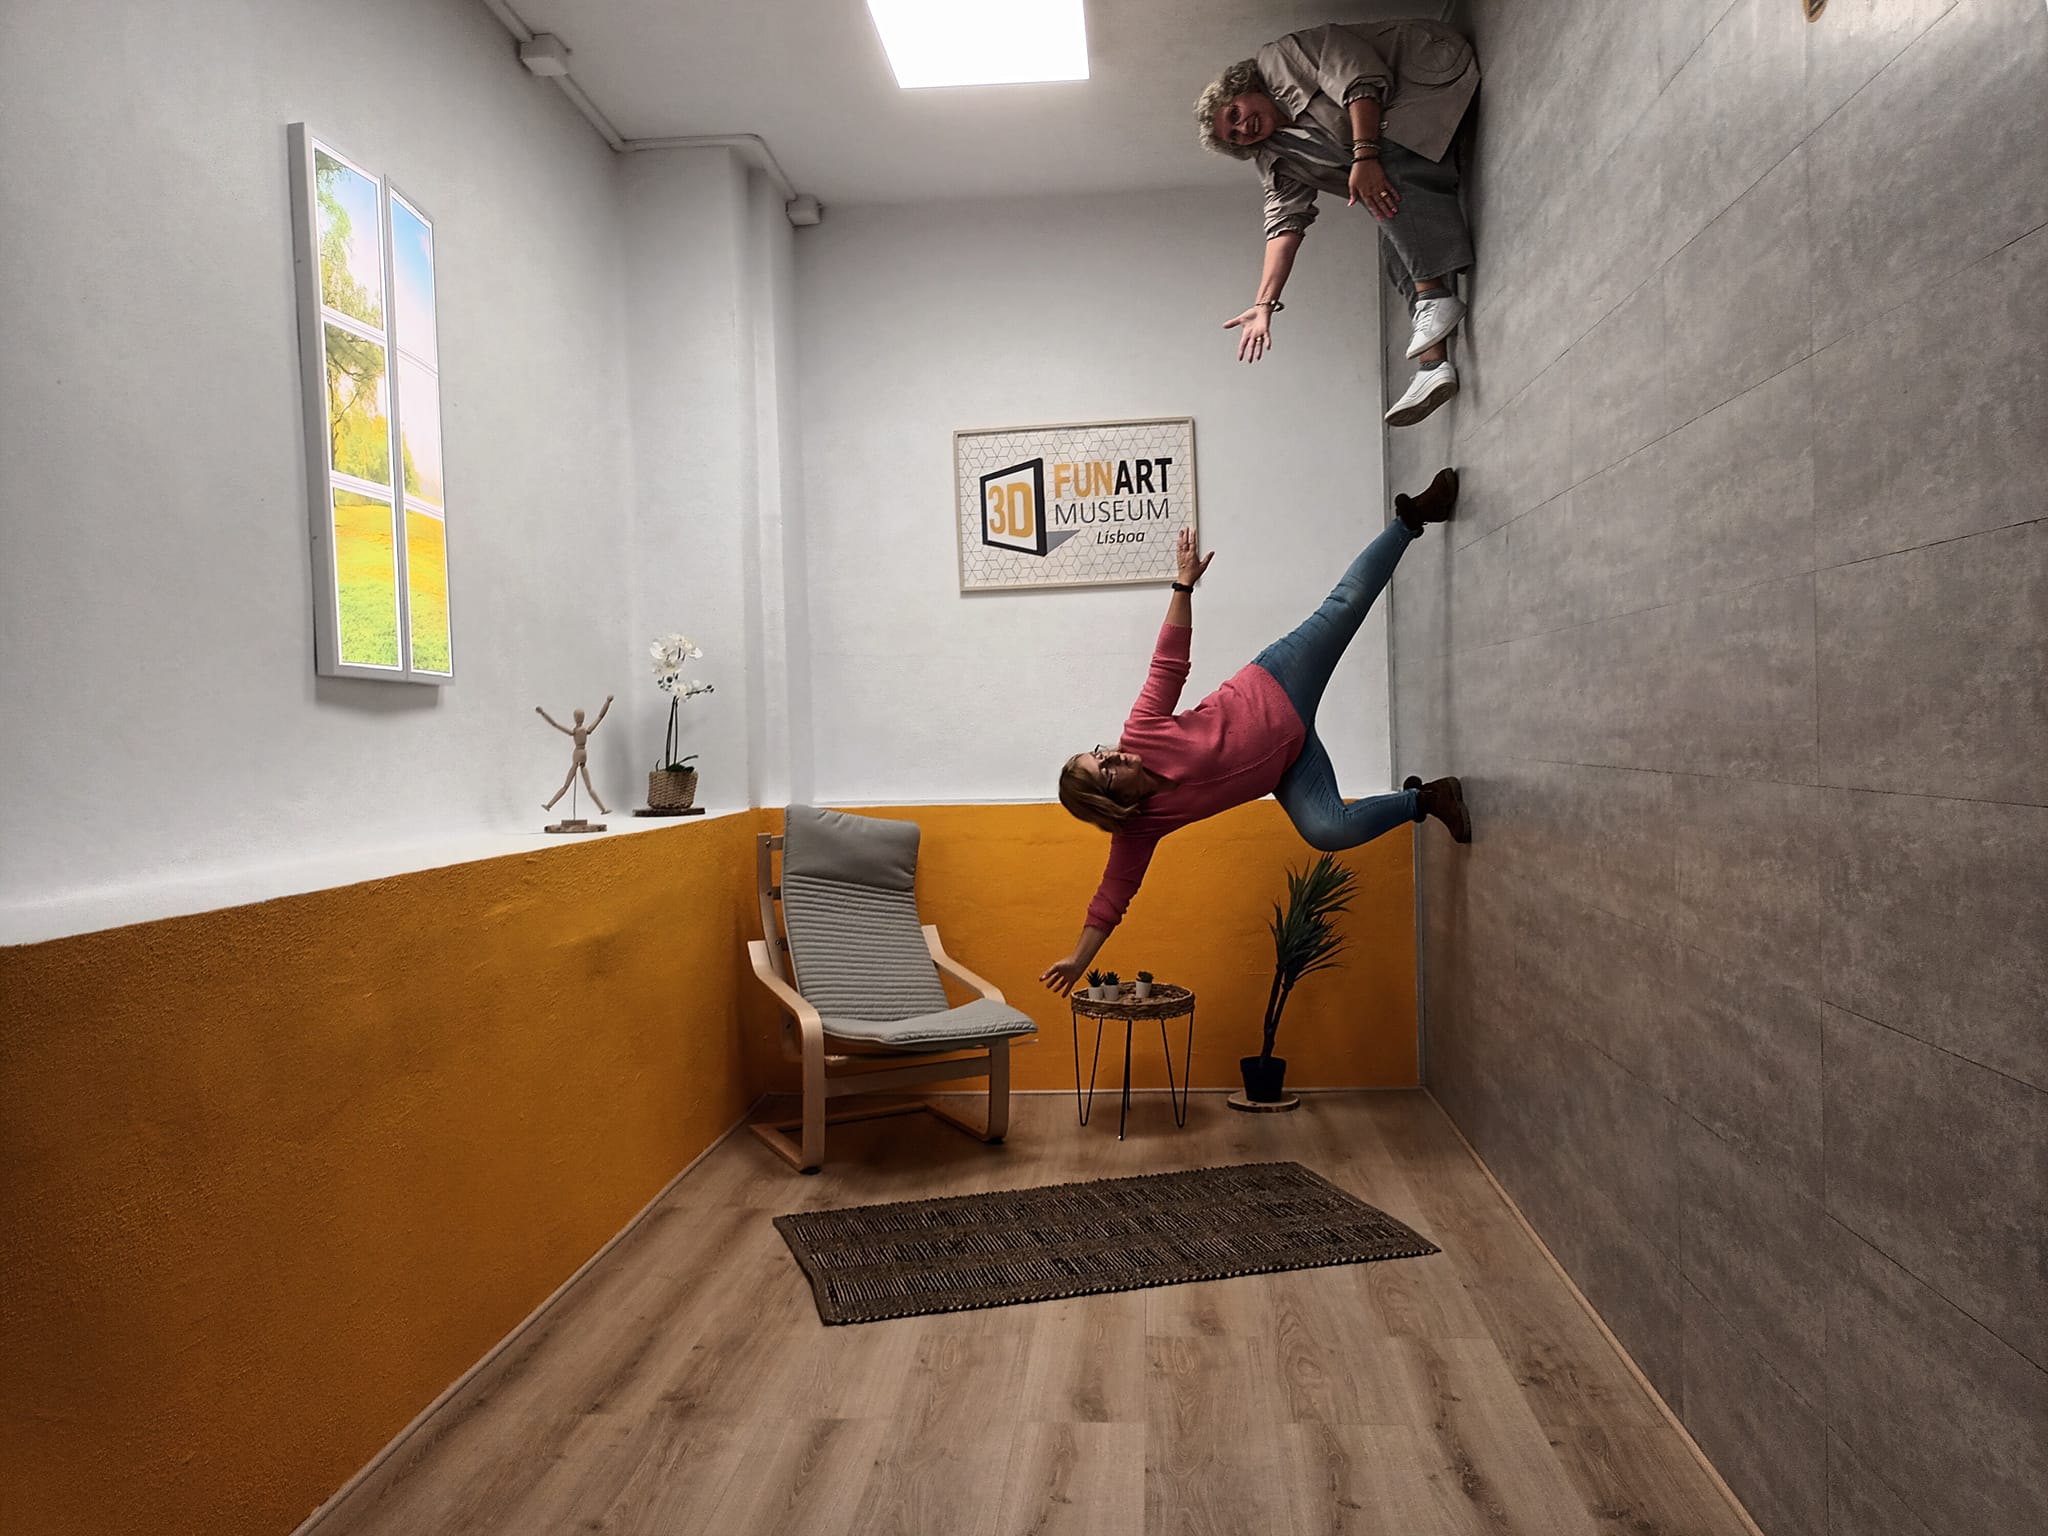 VISITA AO 3D FUN ART MUSEUM LISBOA -Desafiando a gravidade